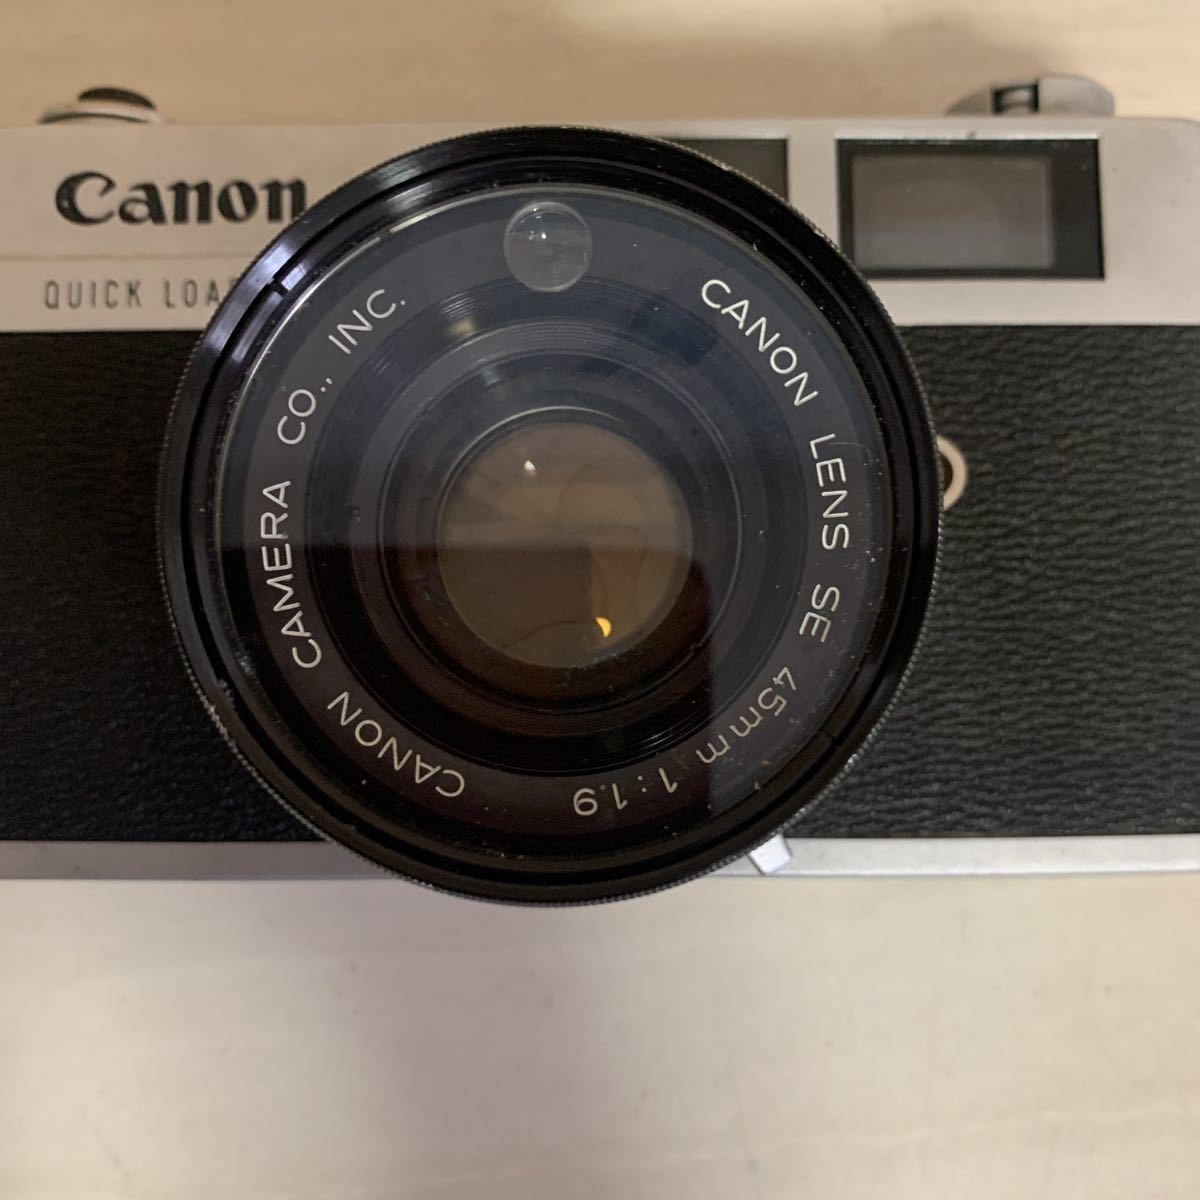 Canon Canonet QL 19 キヤノン レンジファインダー フィルムカメラ 未確認 2836_画像5